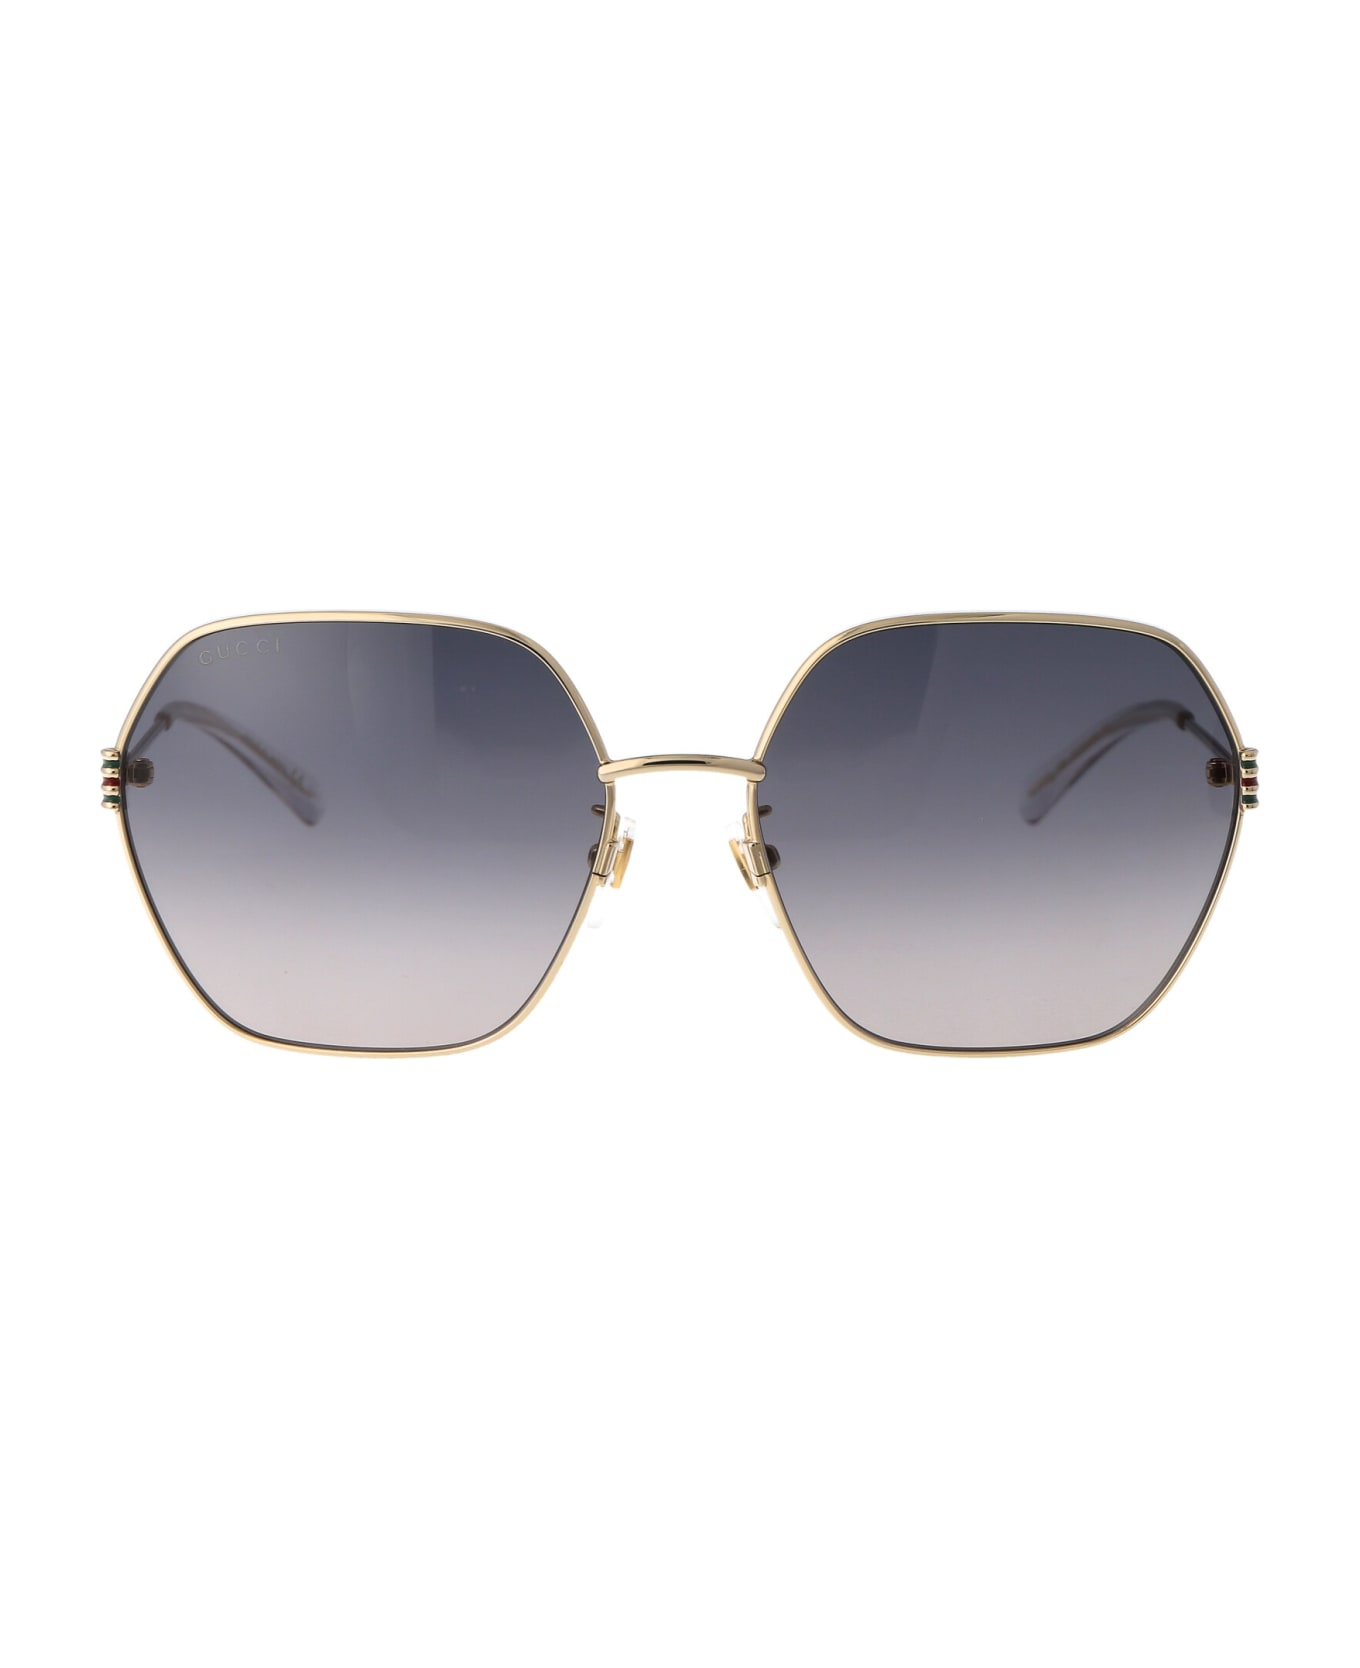 Gucci Eyewear Gg1285sa Sunglasses - 001 GOLD GOLD GREY